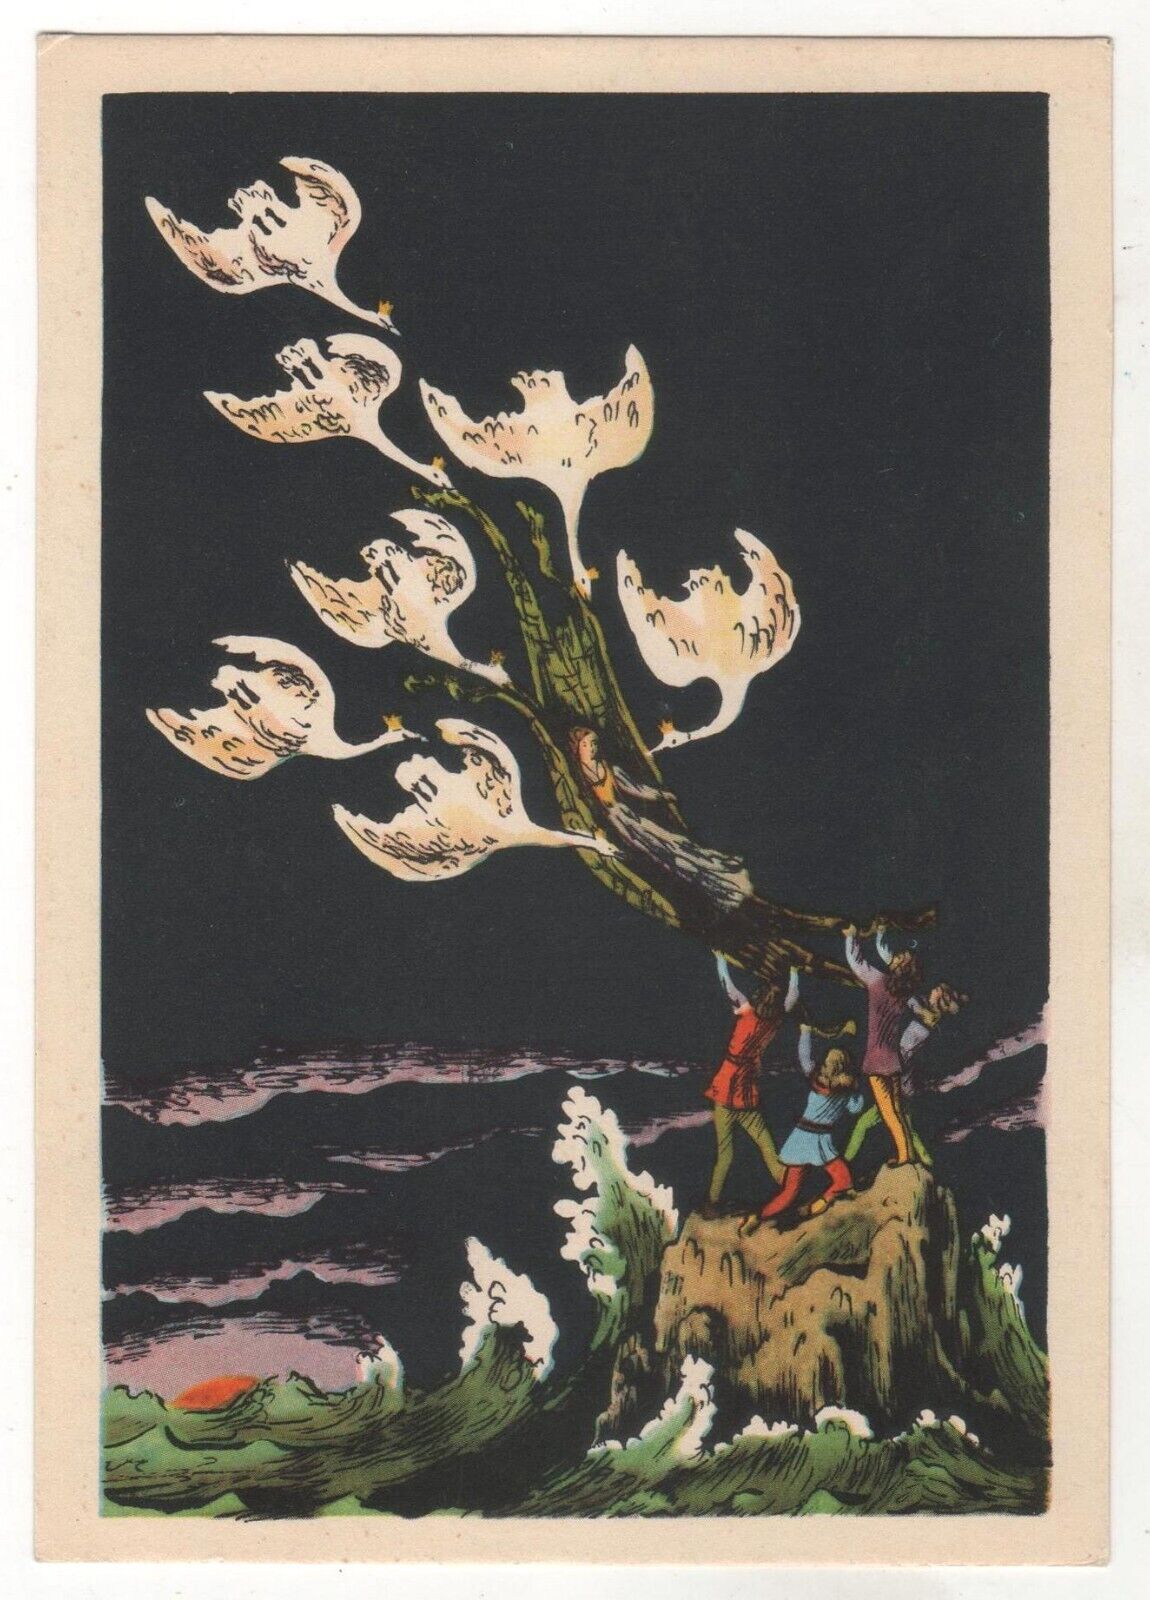 1963 Fairy Tale by Andersen Wild Swans Girl Boy Kids ART RUSSIAN POSTCARD Old